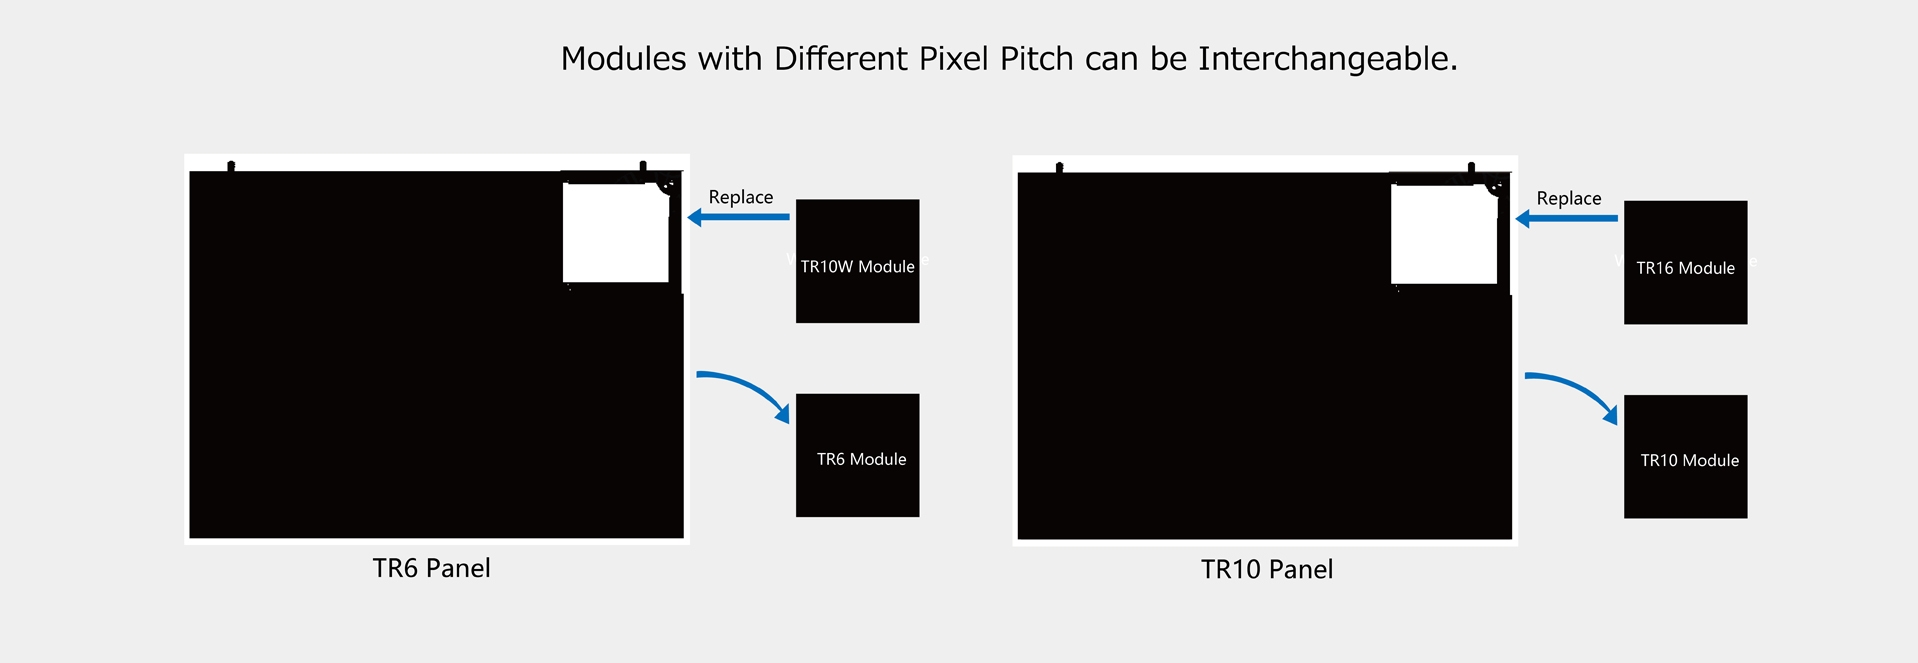 Cùng một khung Cabinet có thể hoán đổi các mô-đun với Pixel Pitch khác nhau